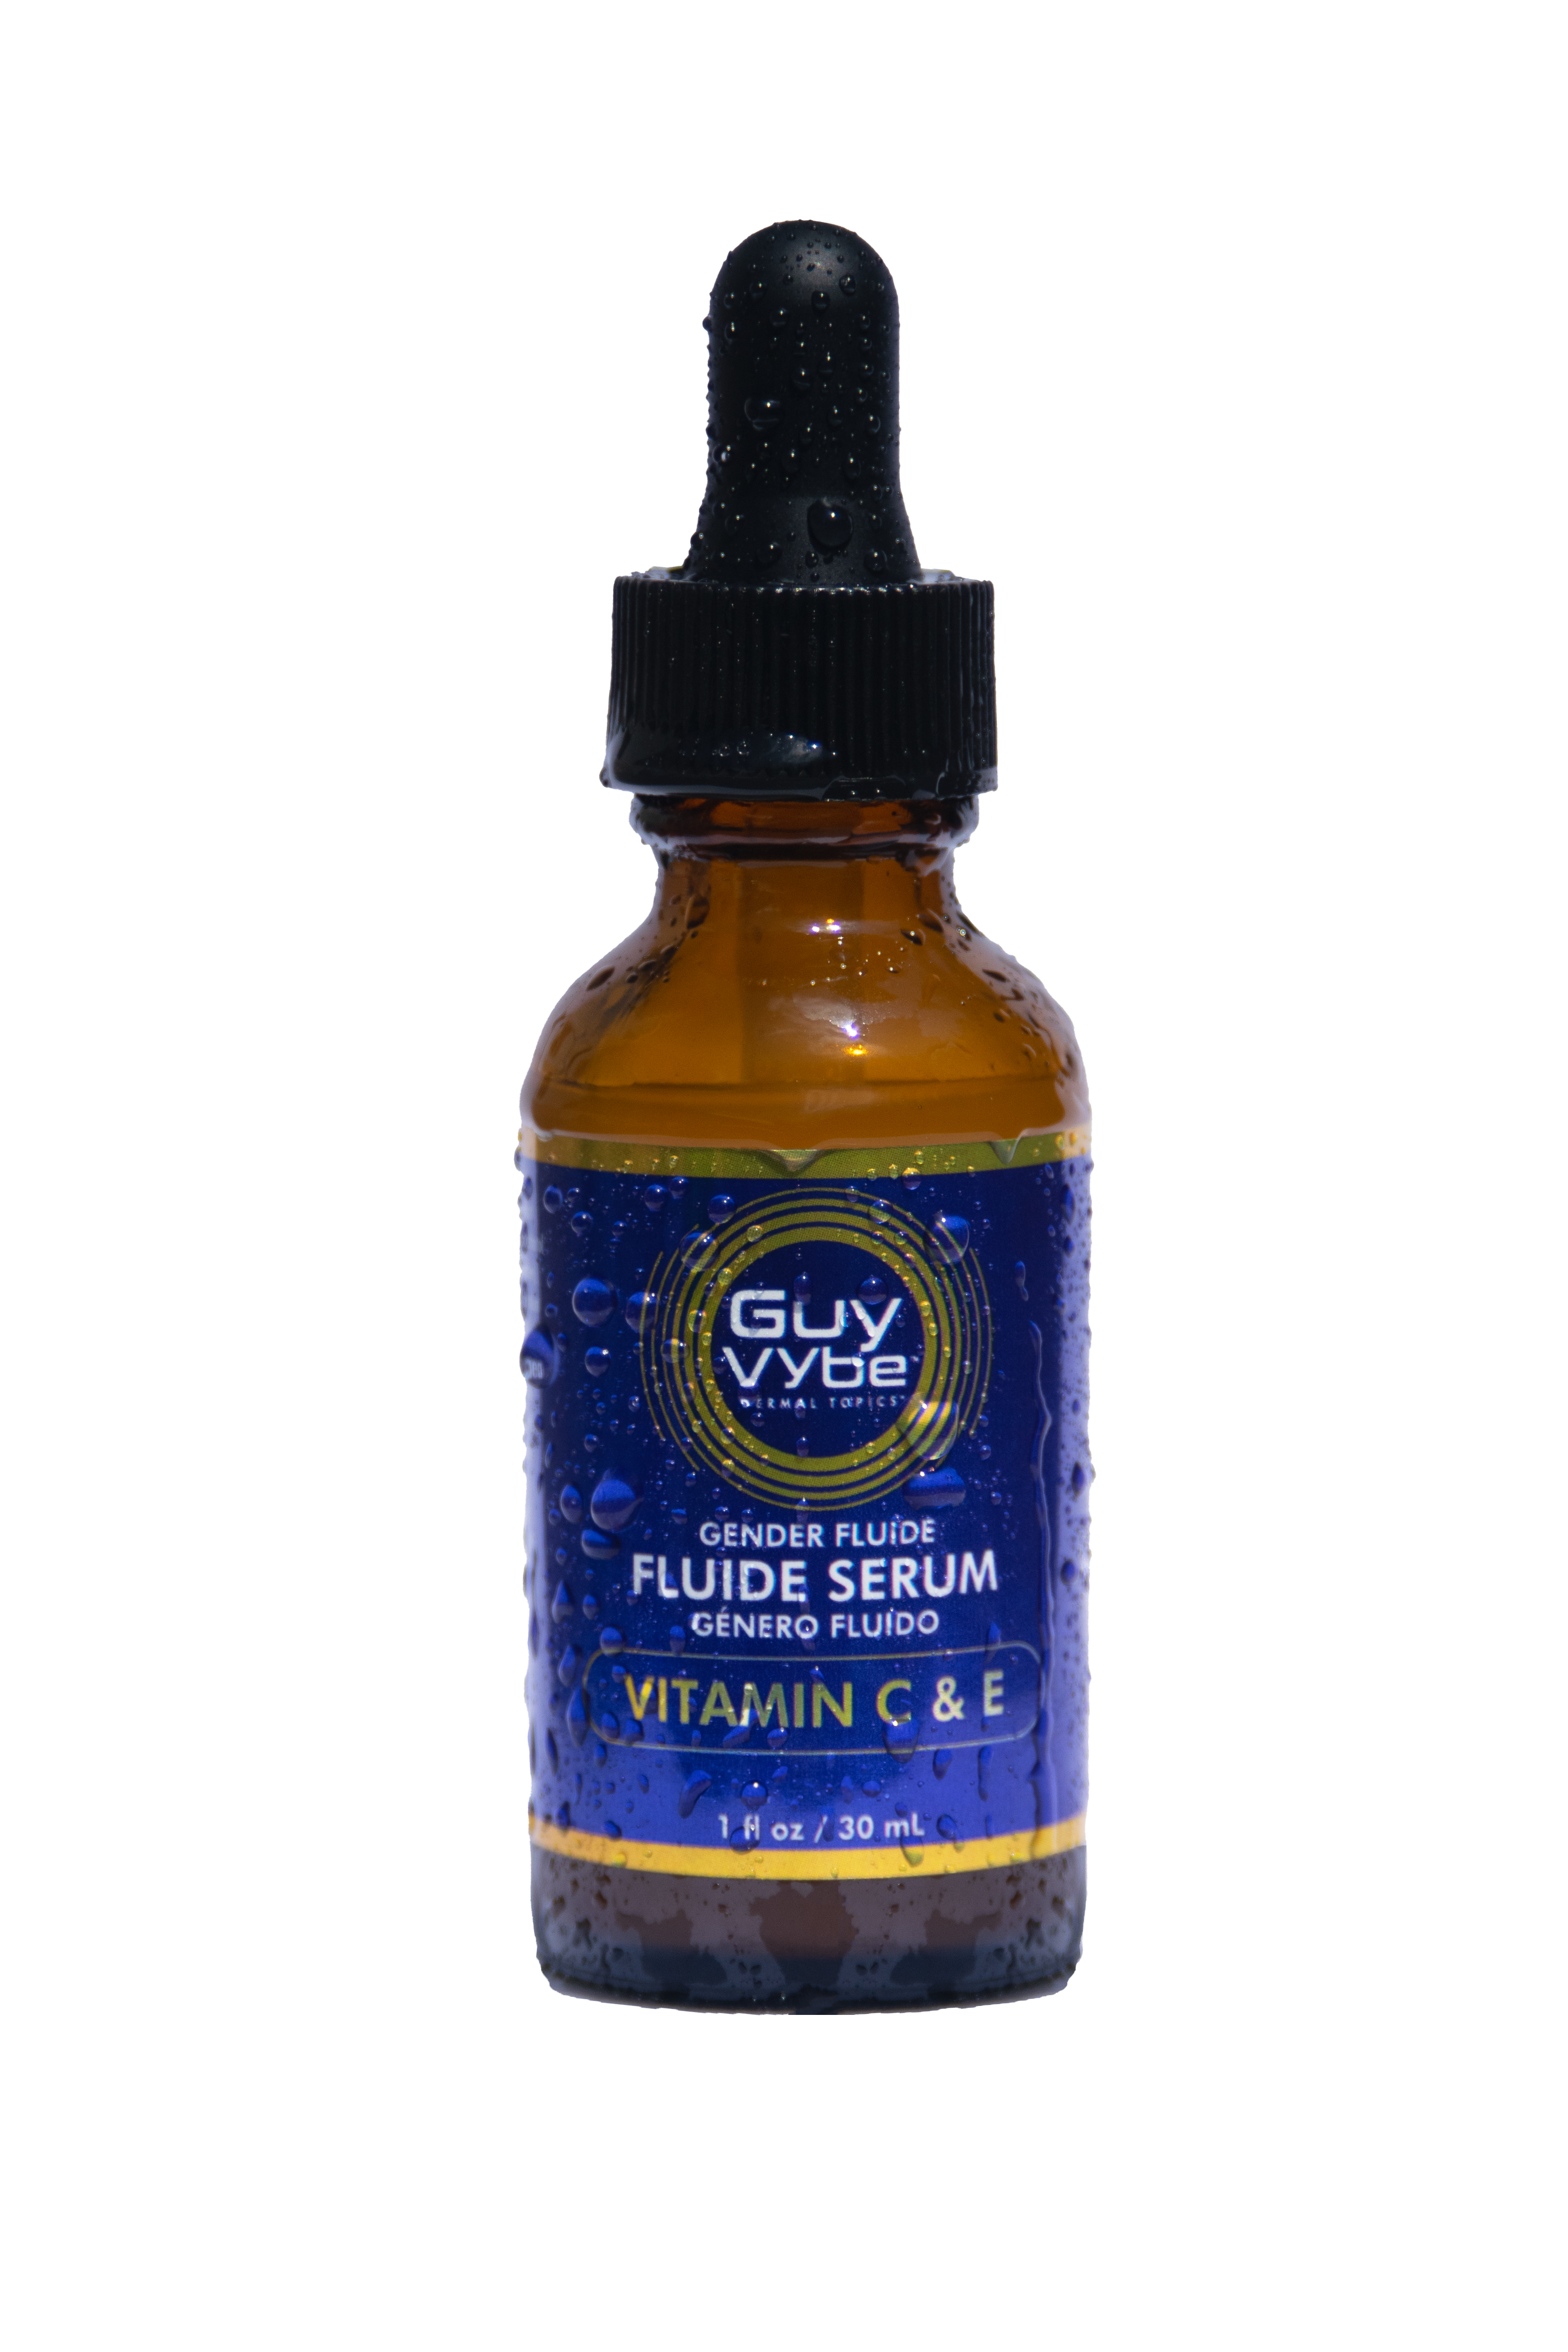 The Original Fluide Serum, 1 oz/30 mL